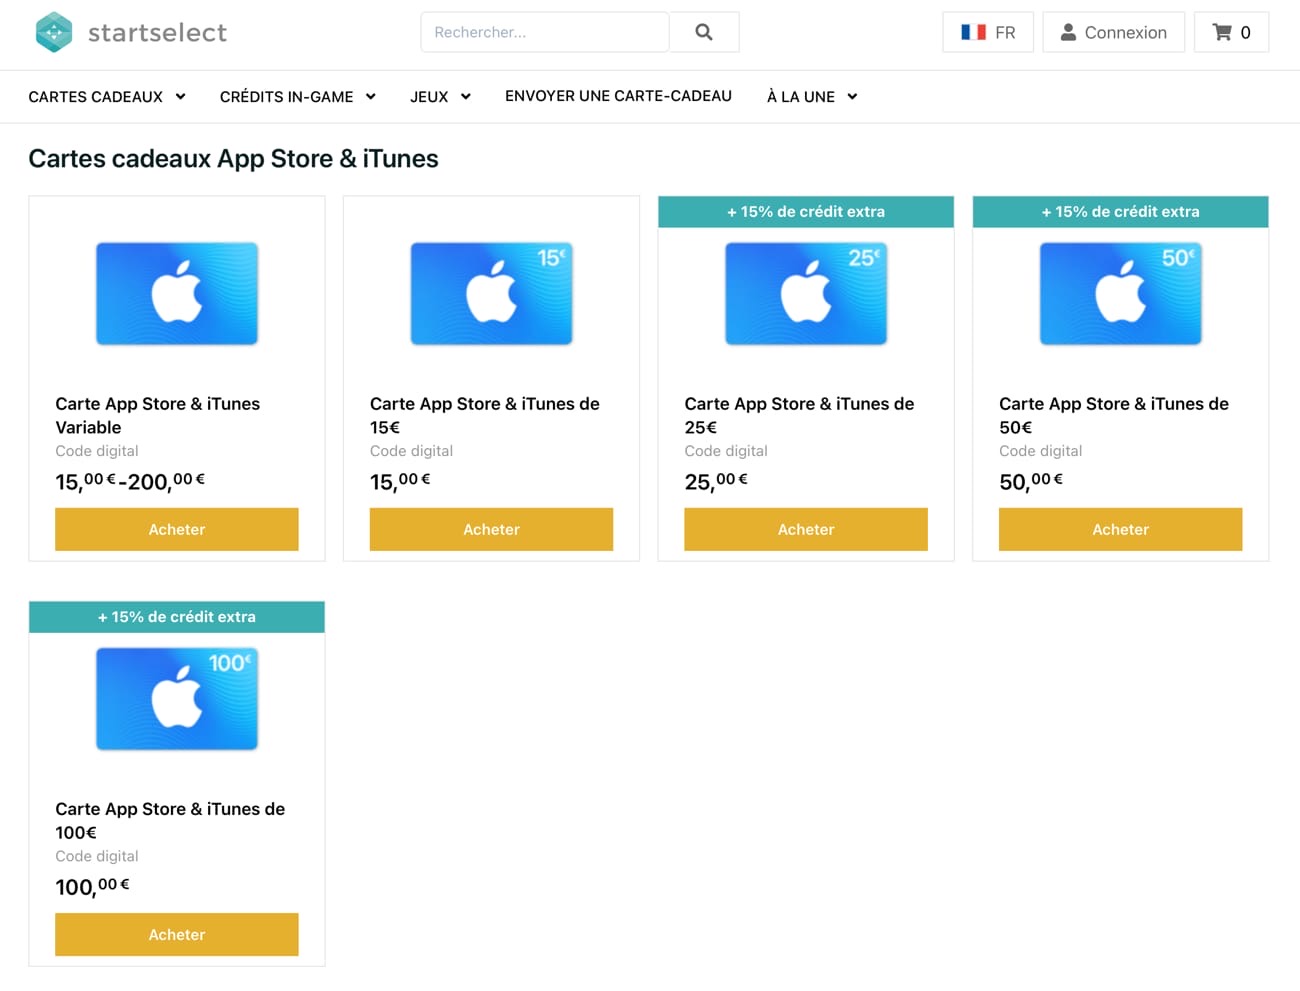 Promo : à nouveau 15 % de crédit bonus sur les cartes App Store chez  Startselect